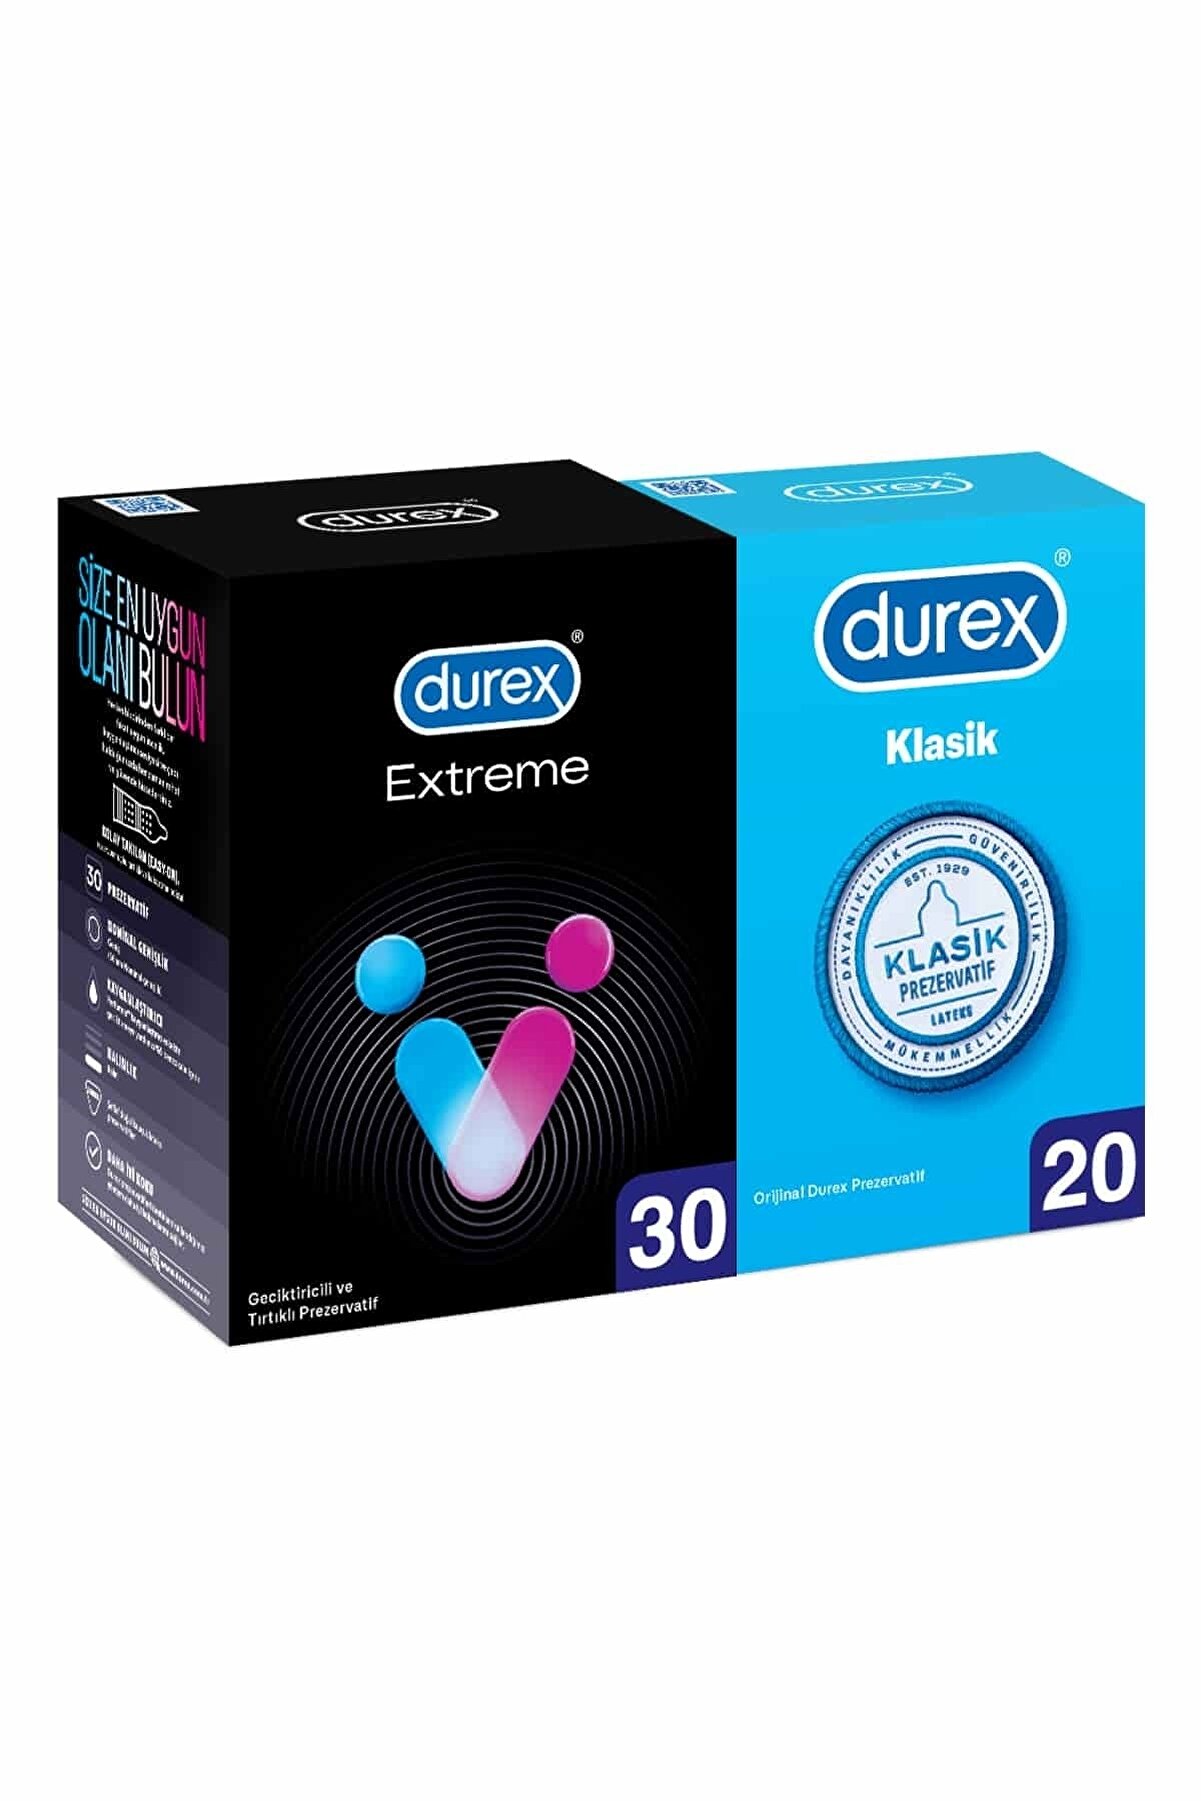 Durex Extreme li Prezervatif 30 Lu Ve Klasik Kondom 20 Li